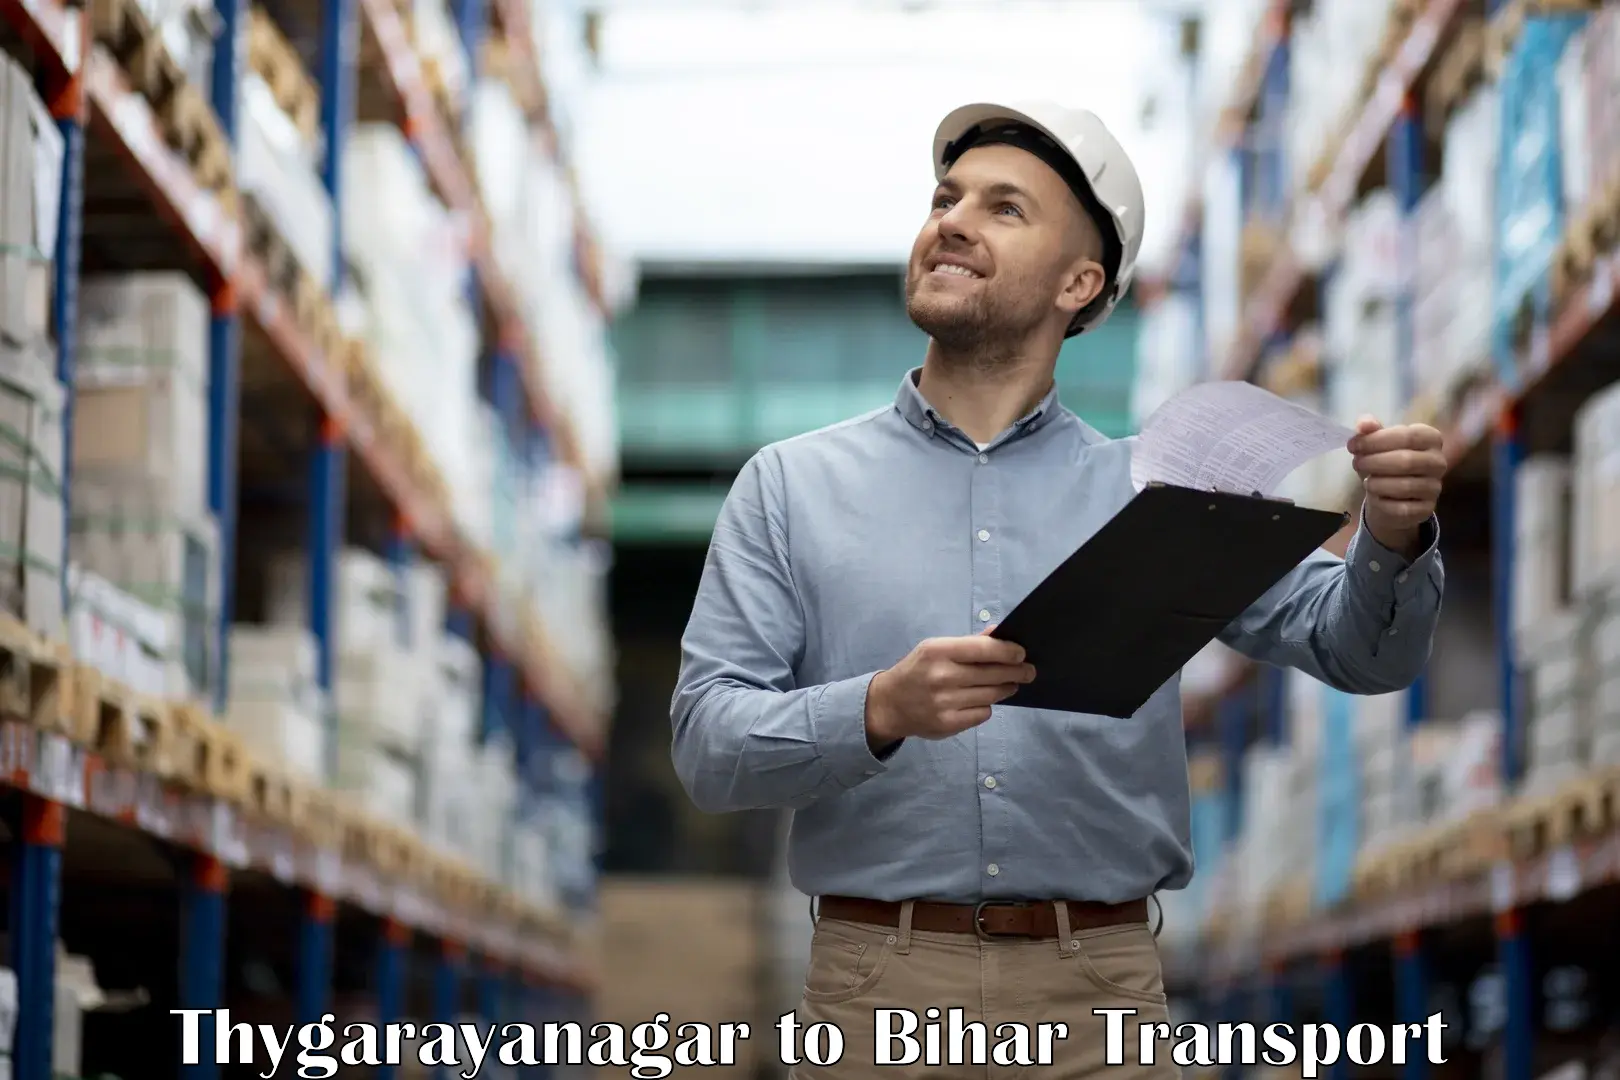 Furniture transport service Thygarayanagar to Khagaria